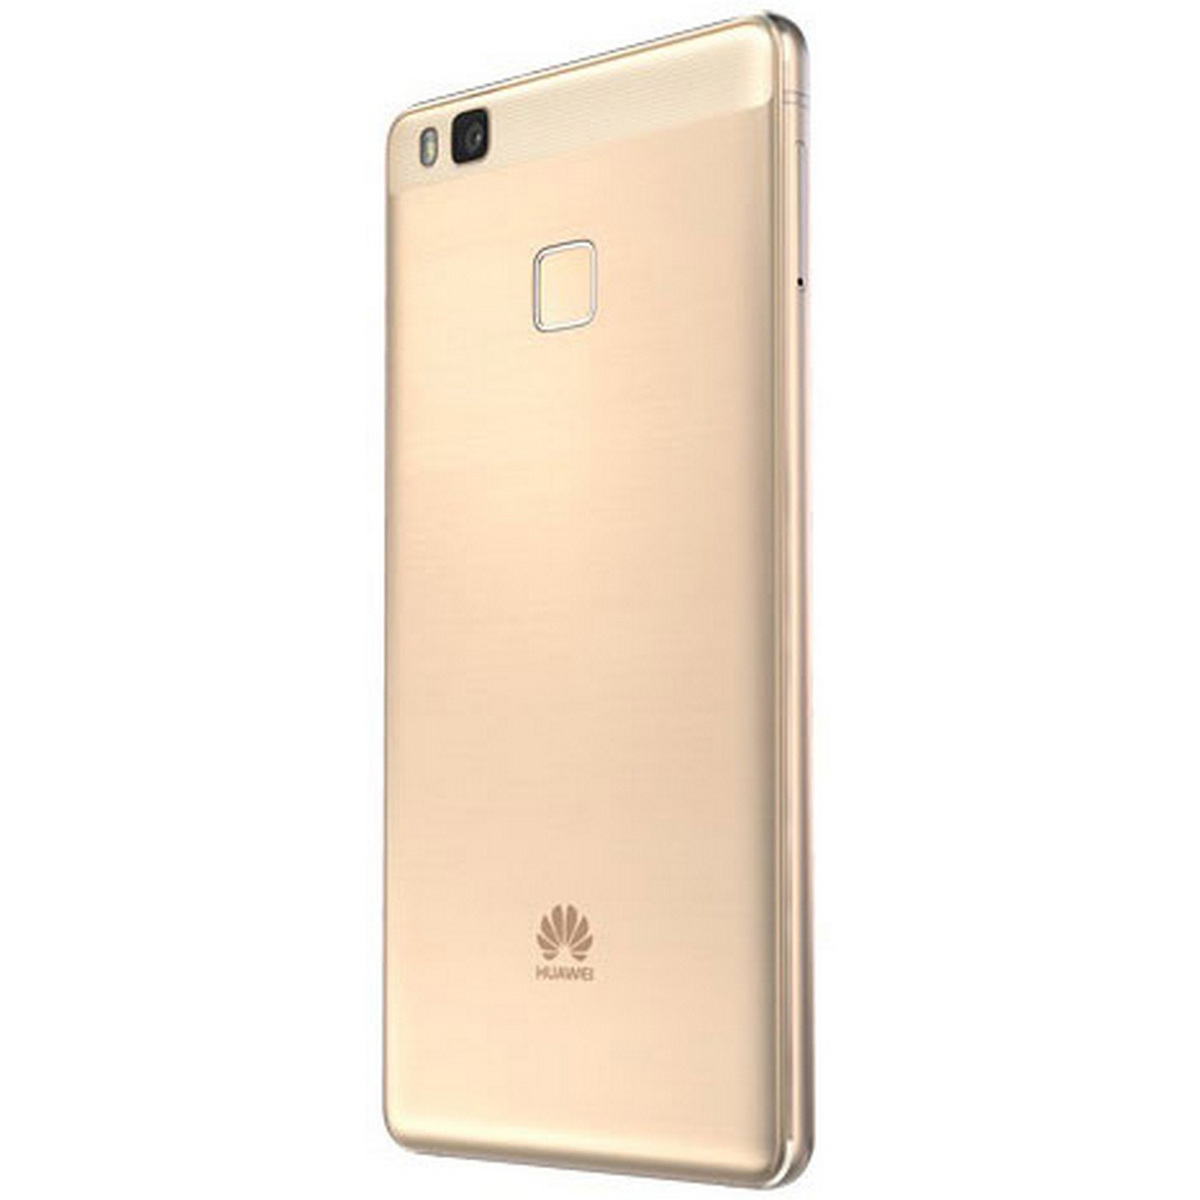 Brochure Wiens Miles Huawei P9 Lite 16GB Gold Online at Best Price | Smart Phones | Lulu KSA